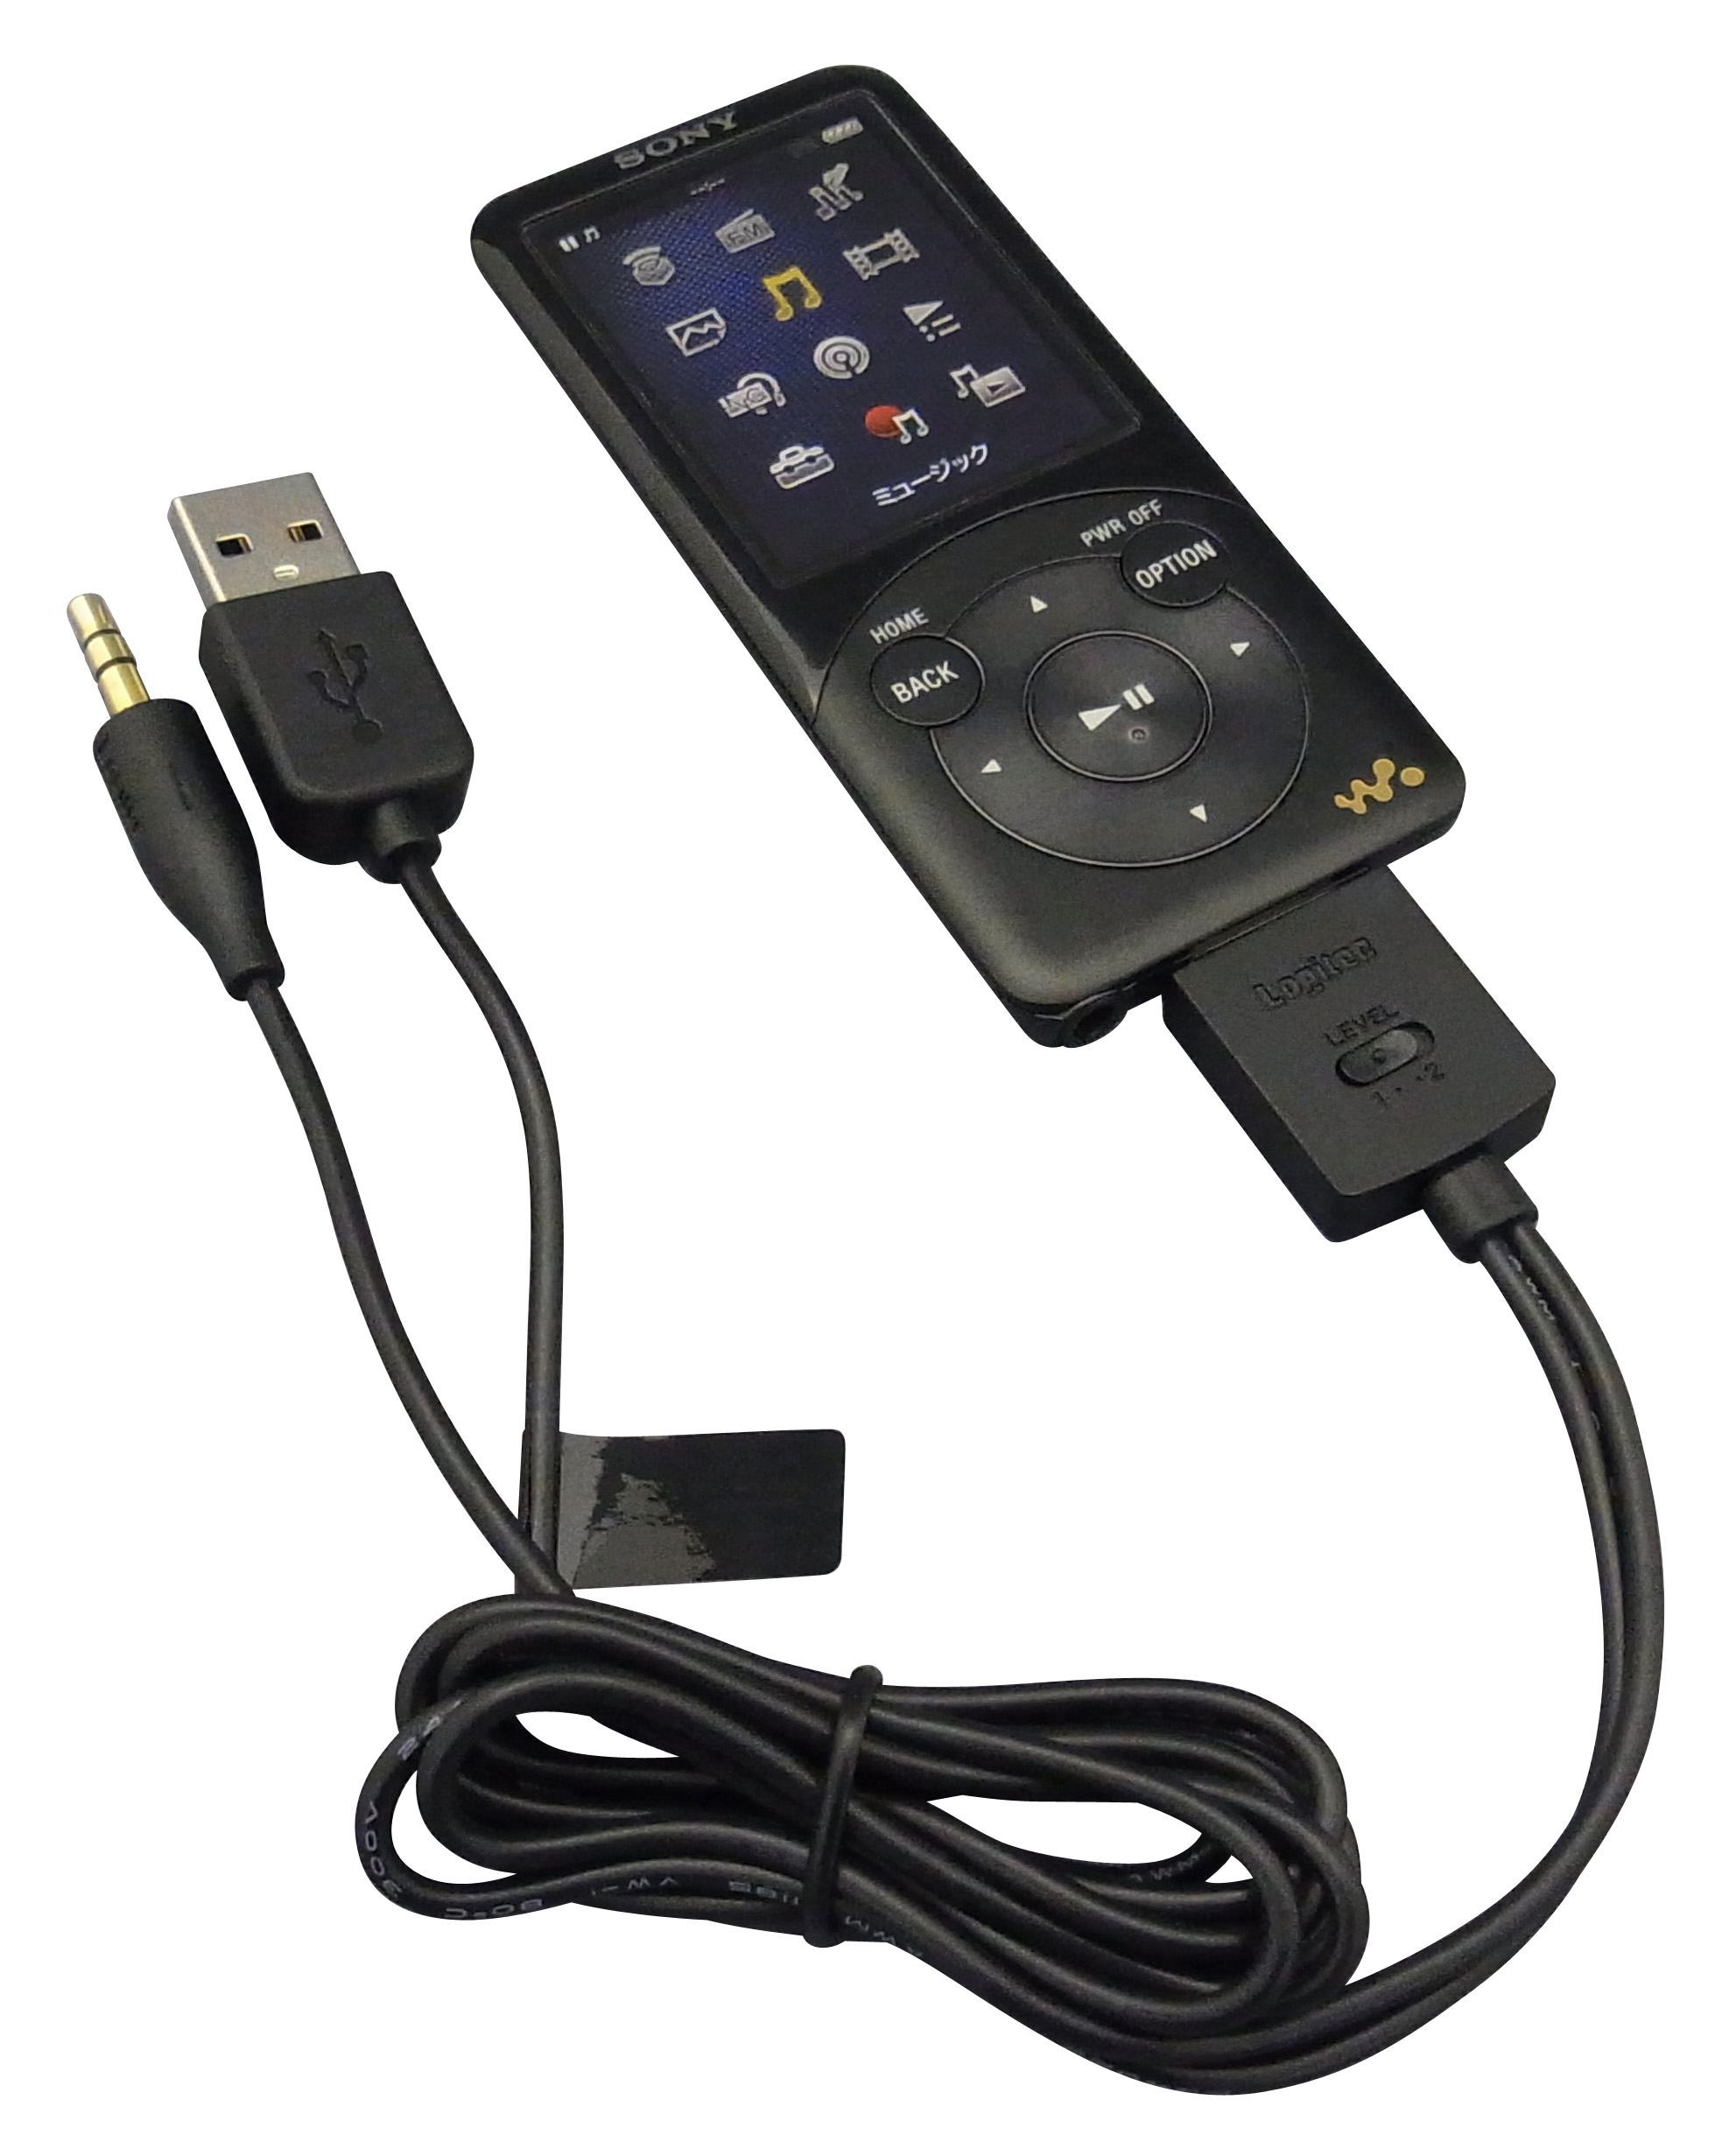 プレスリリース 動画 データ転送 録音ができる Wm Port 搭載walkman 専用ケーブル発売 ソニー公式ライセンスdesigned For Walkman 取得製品だから安心 ロジテック